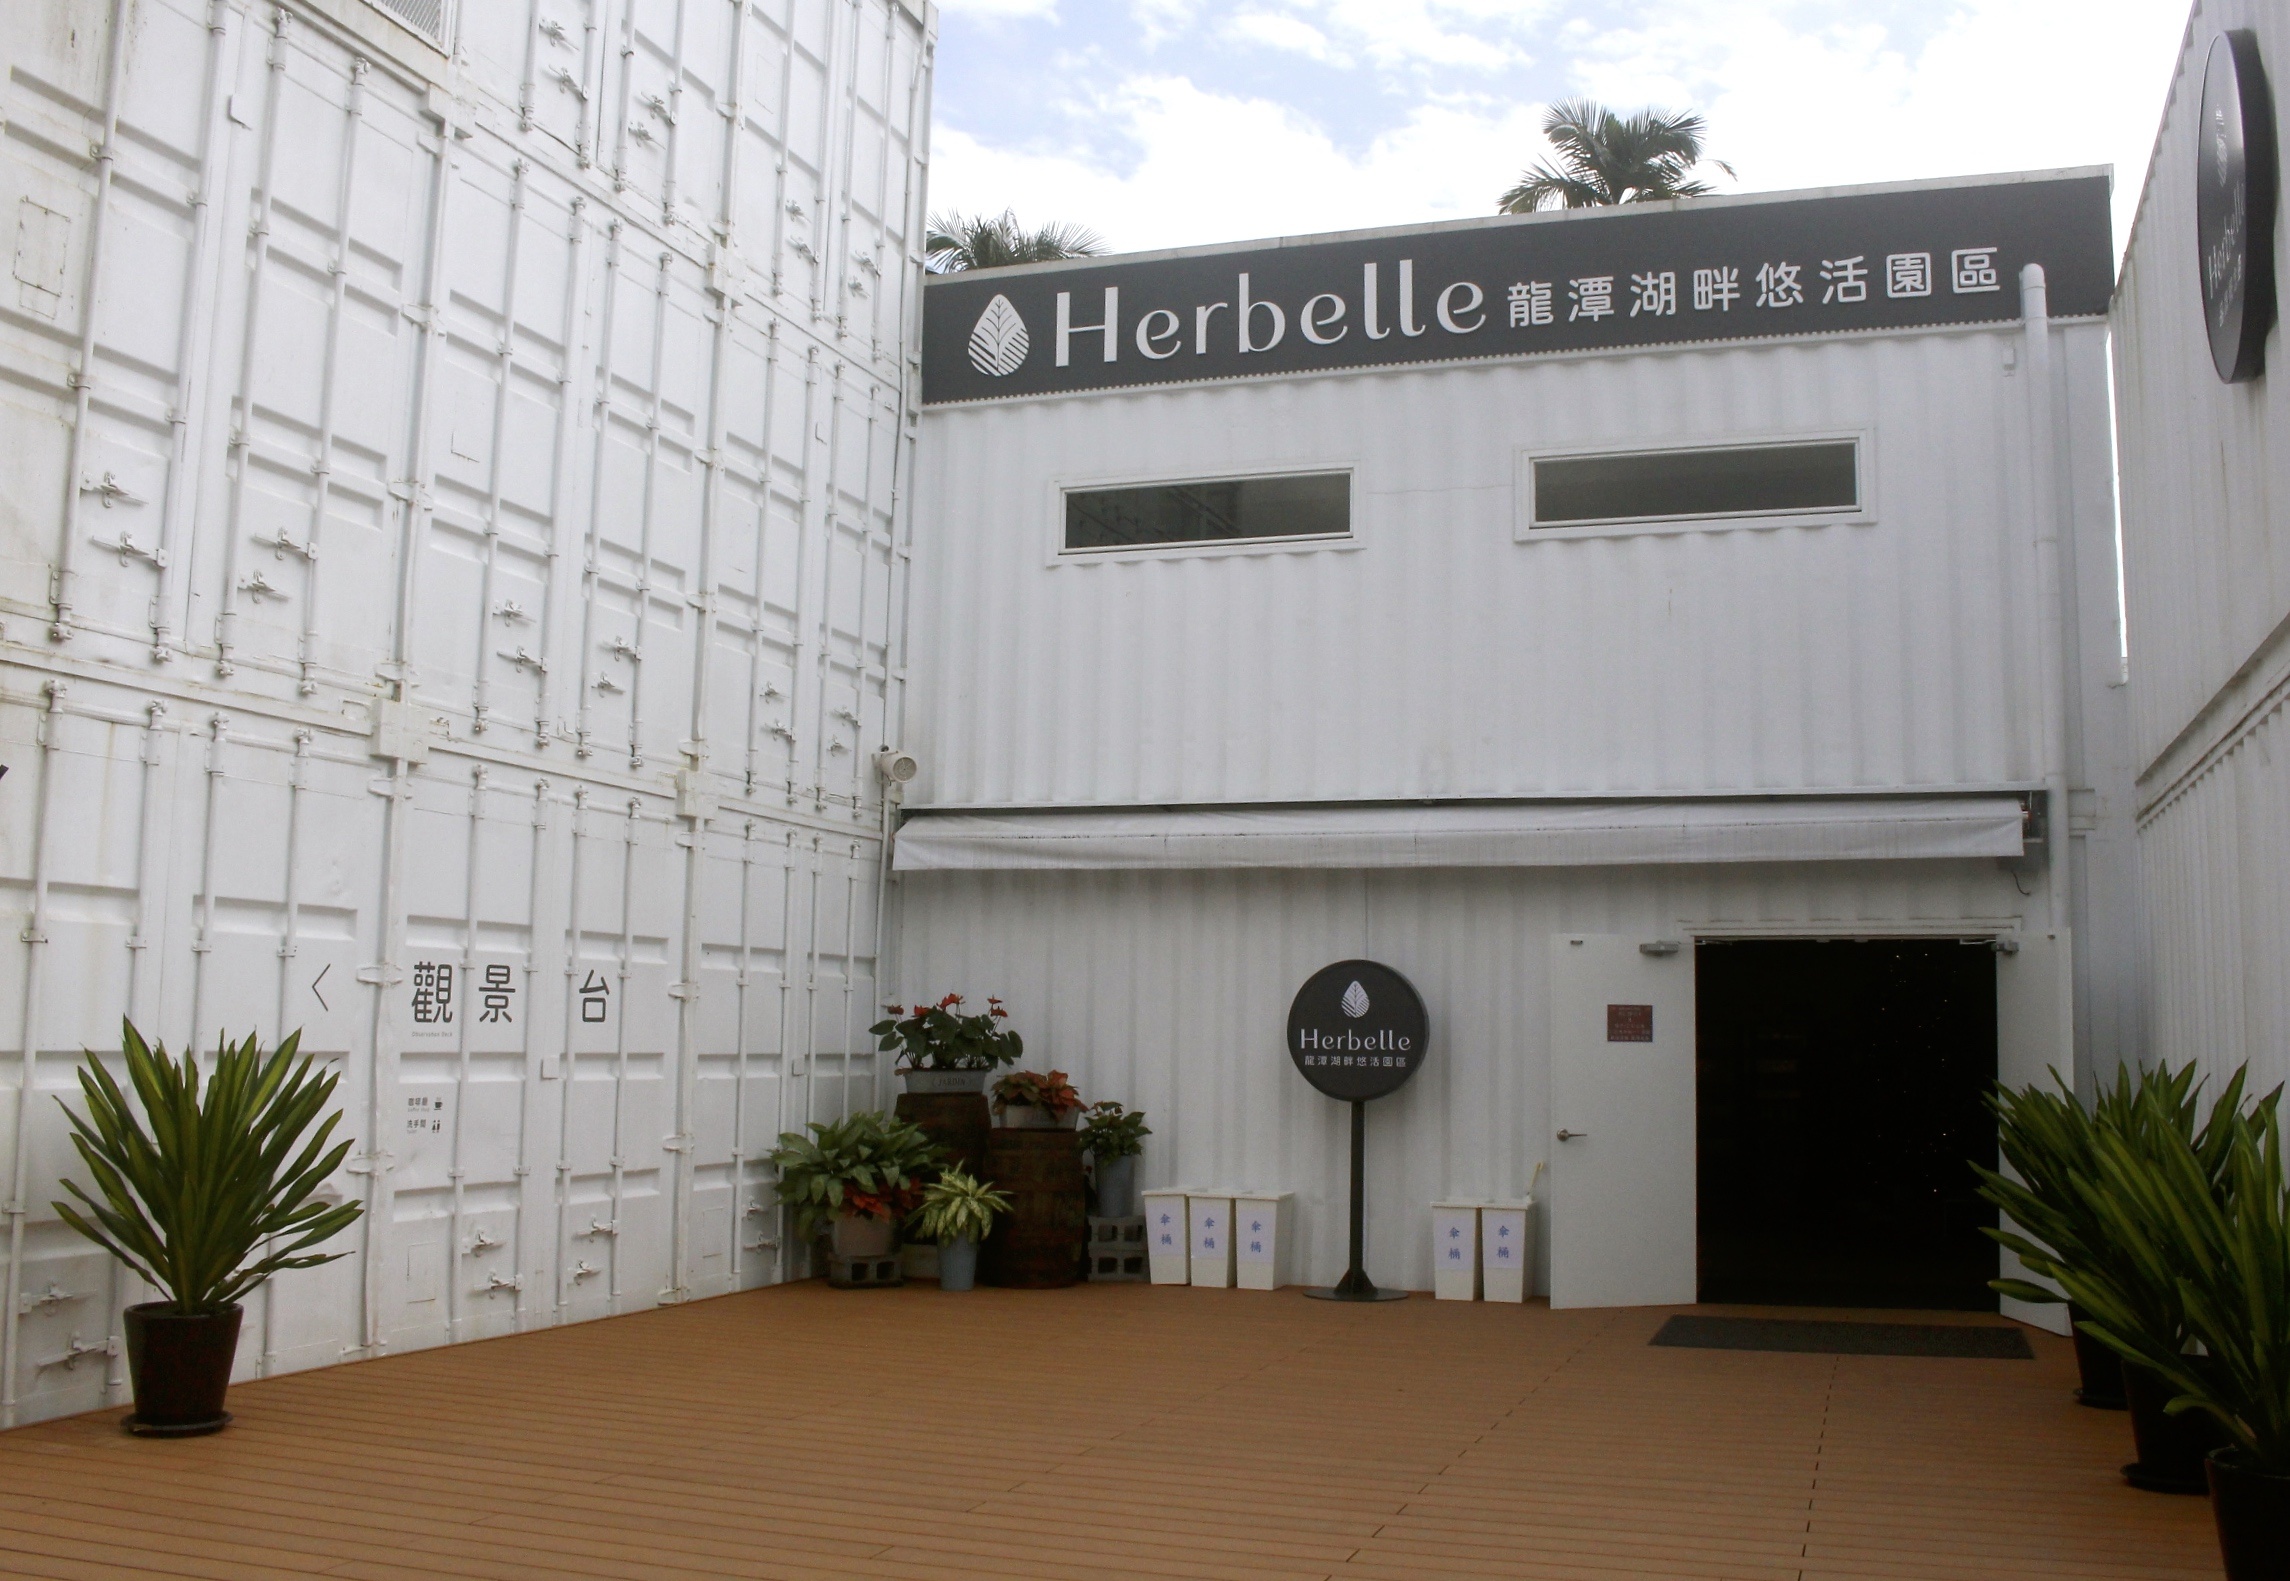 【宜蘭 Herbelle龍潭湖悠活園區】73個白色貨櫃建築拍照點。龍潭湖公園「龍掌坡」溜滑梯!!!